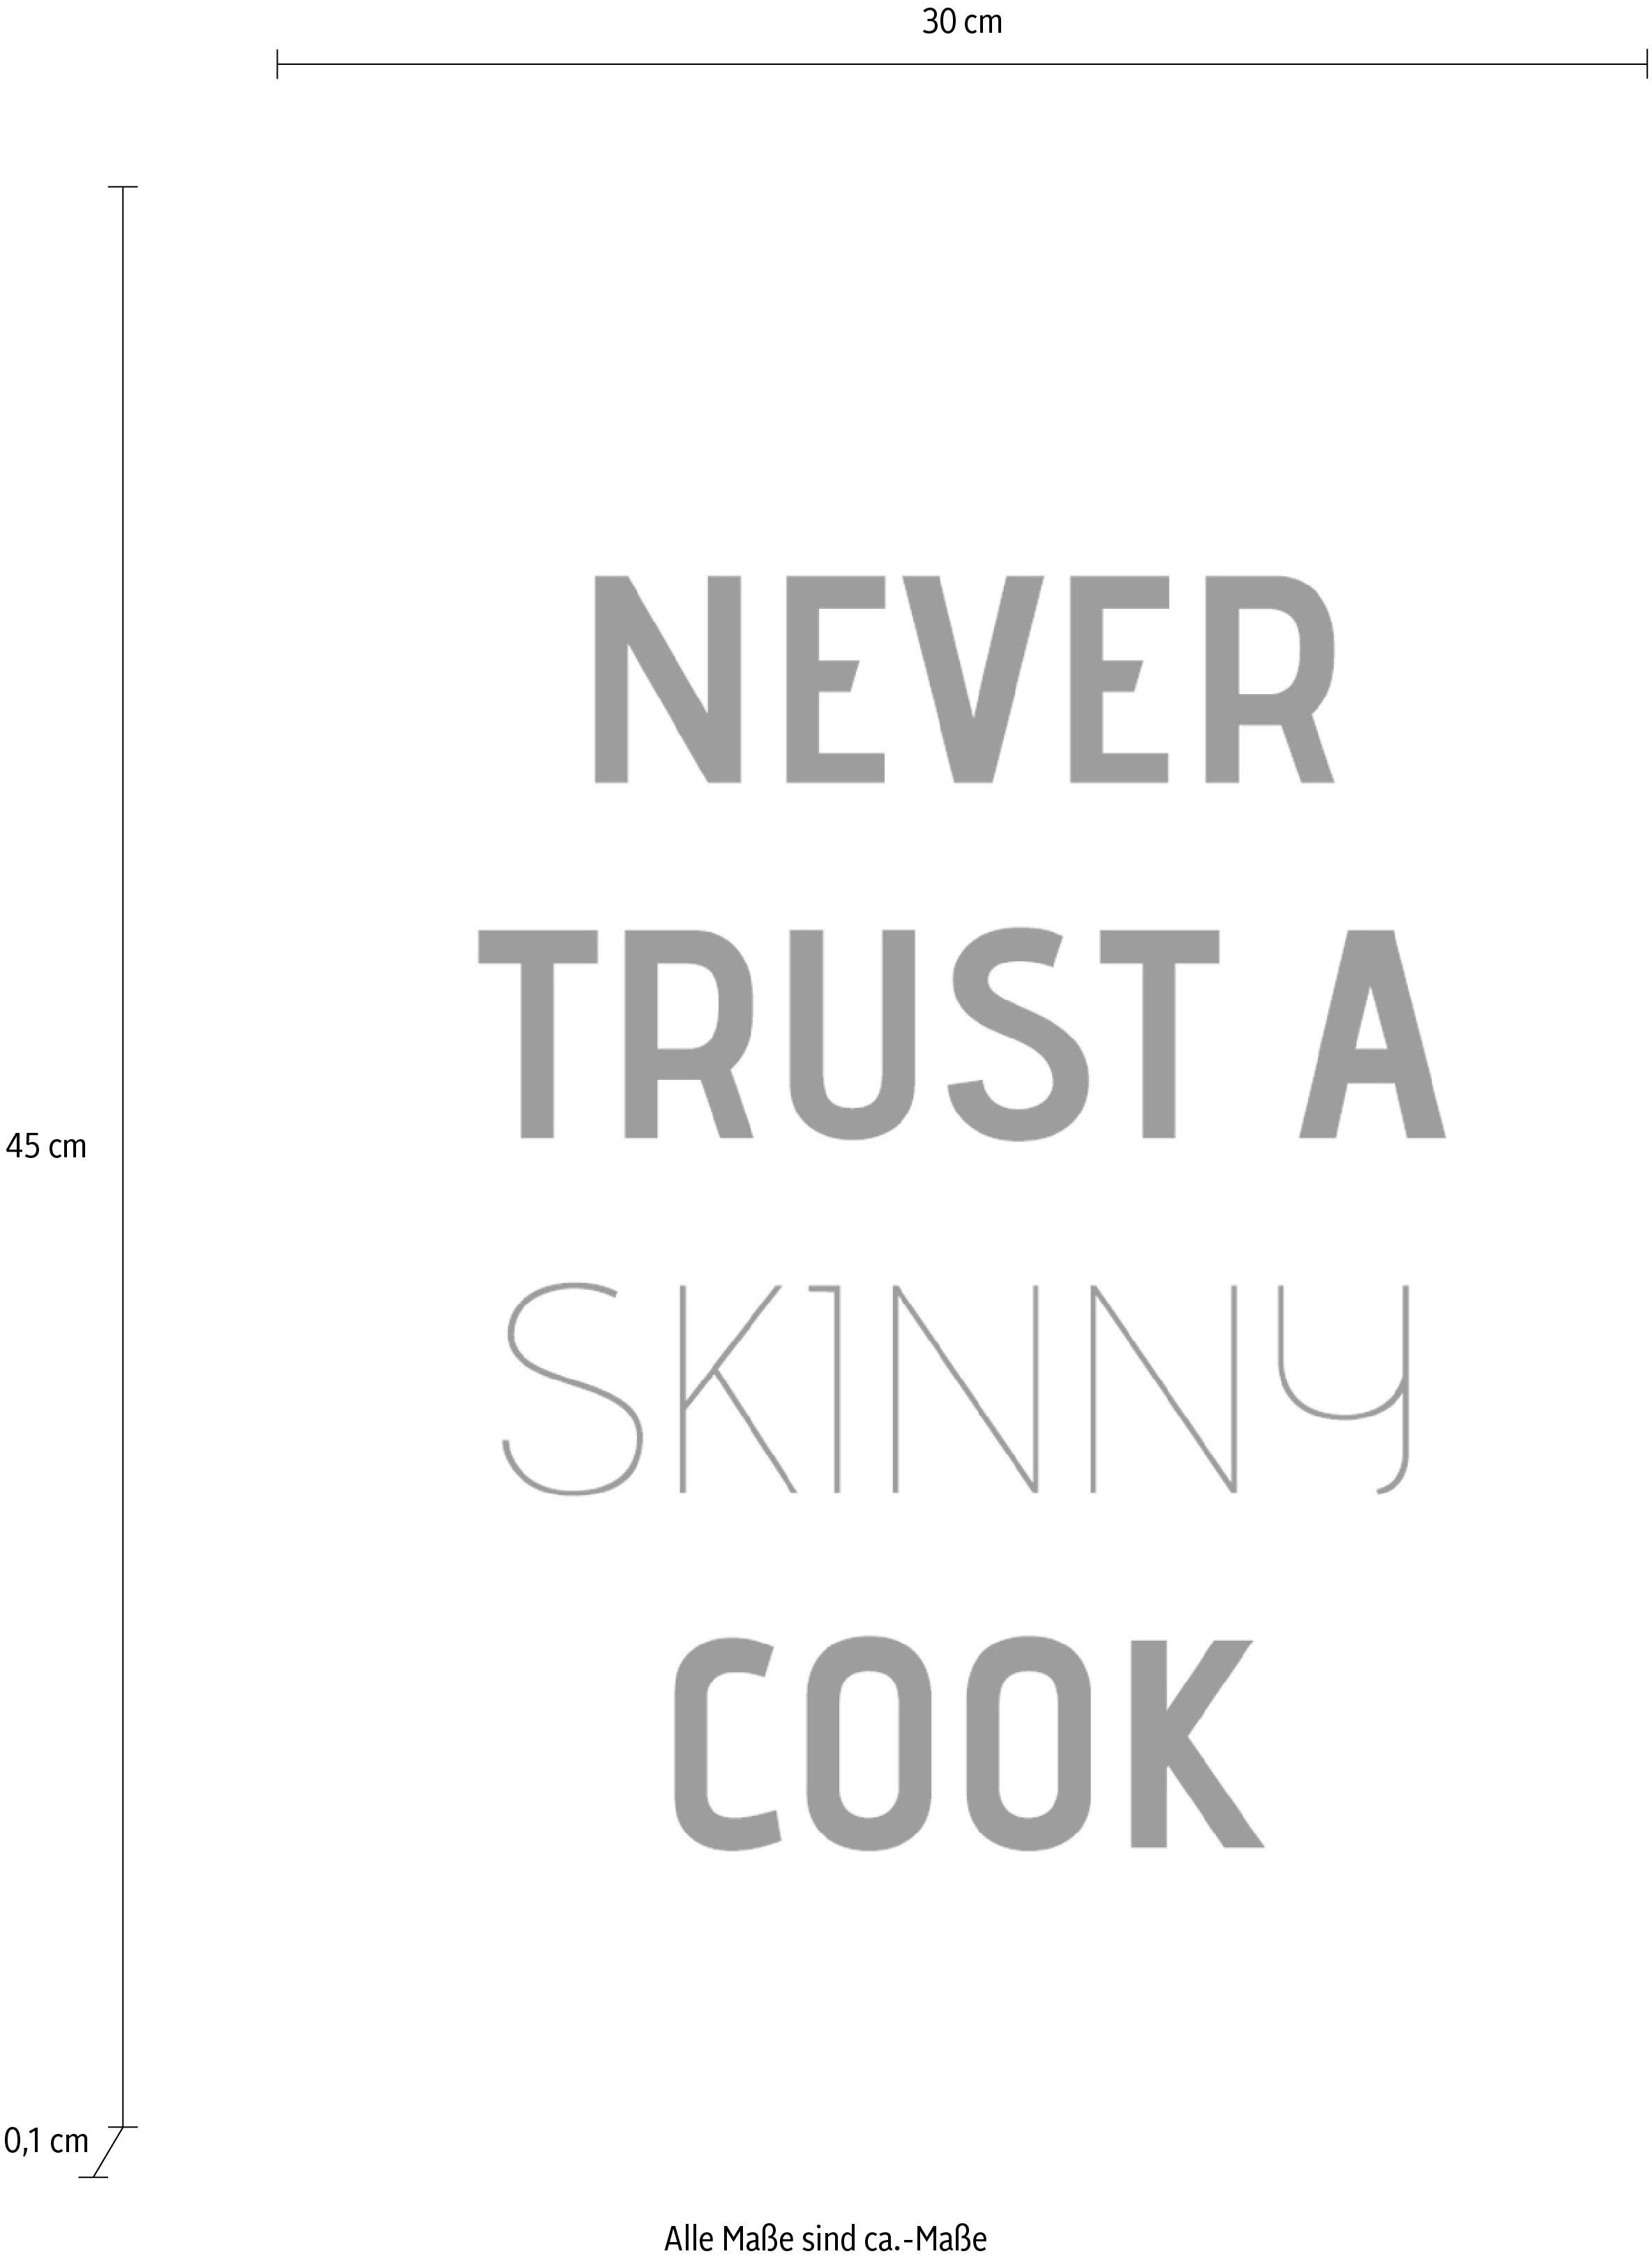 Stahlblech Wanddekoobjekt Never trust a cook, auf Schriftzug queence skinny